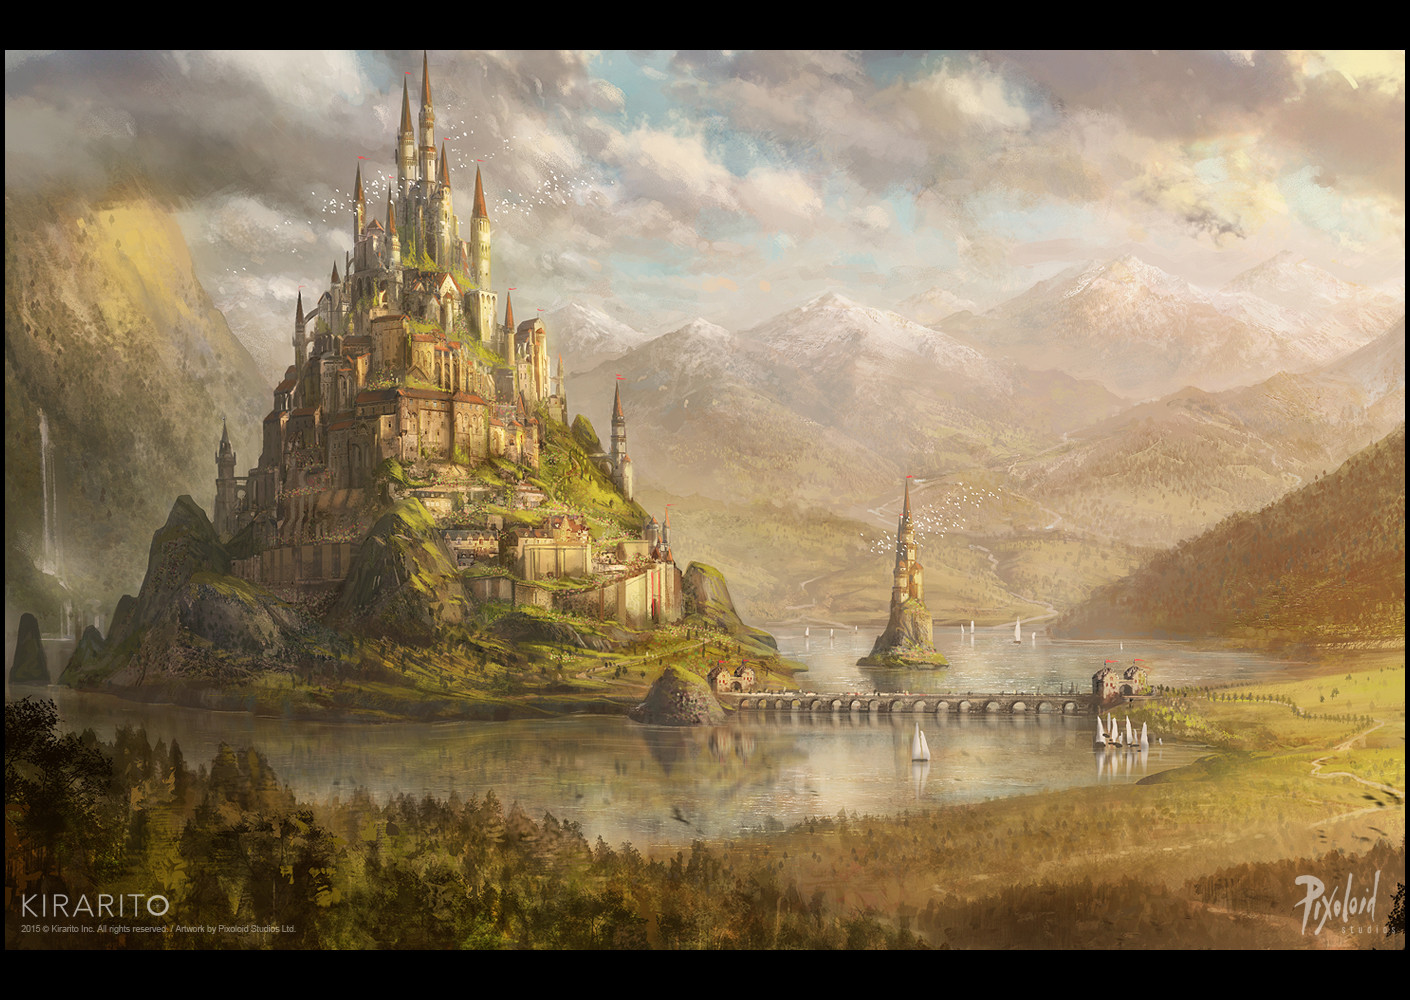 https://cdnb.artstation.com/p/assets/images/images/001/742/701/large/pixoloid-studios-kirarito-fantasy-castle-c-pixoloid-studios.jpg?1492520571